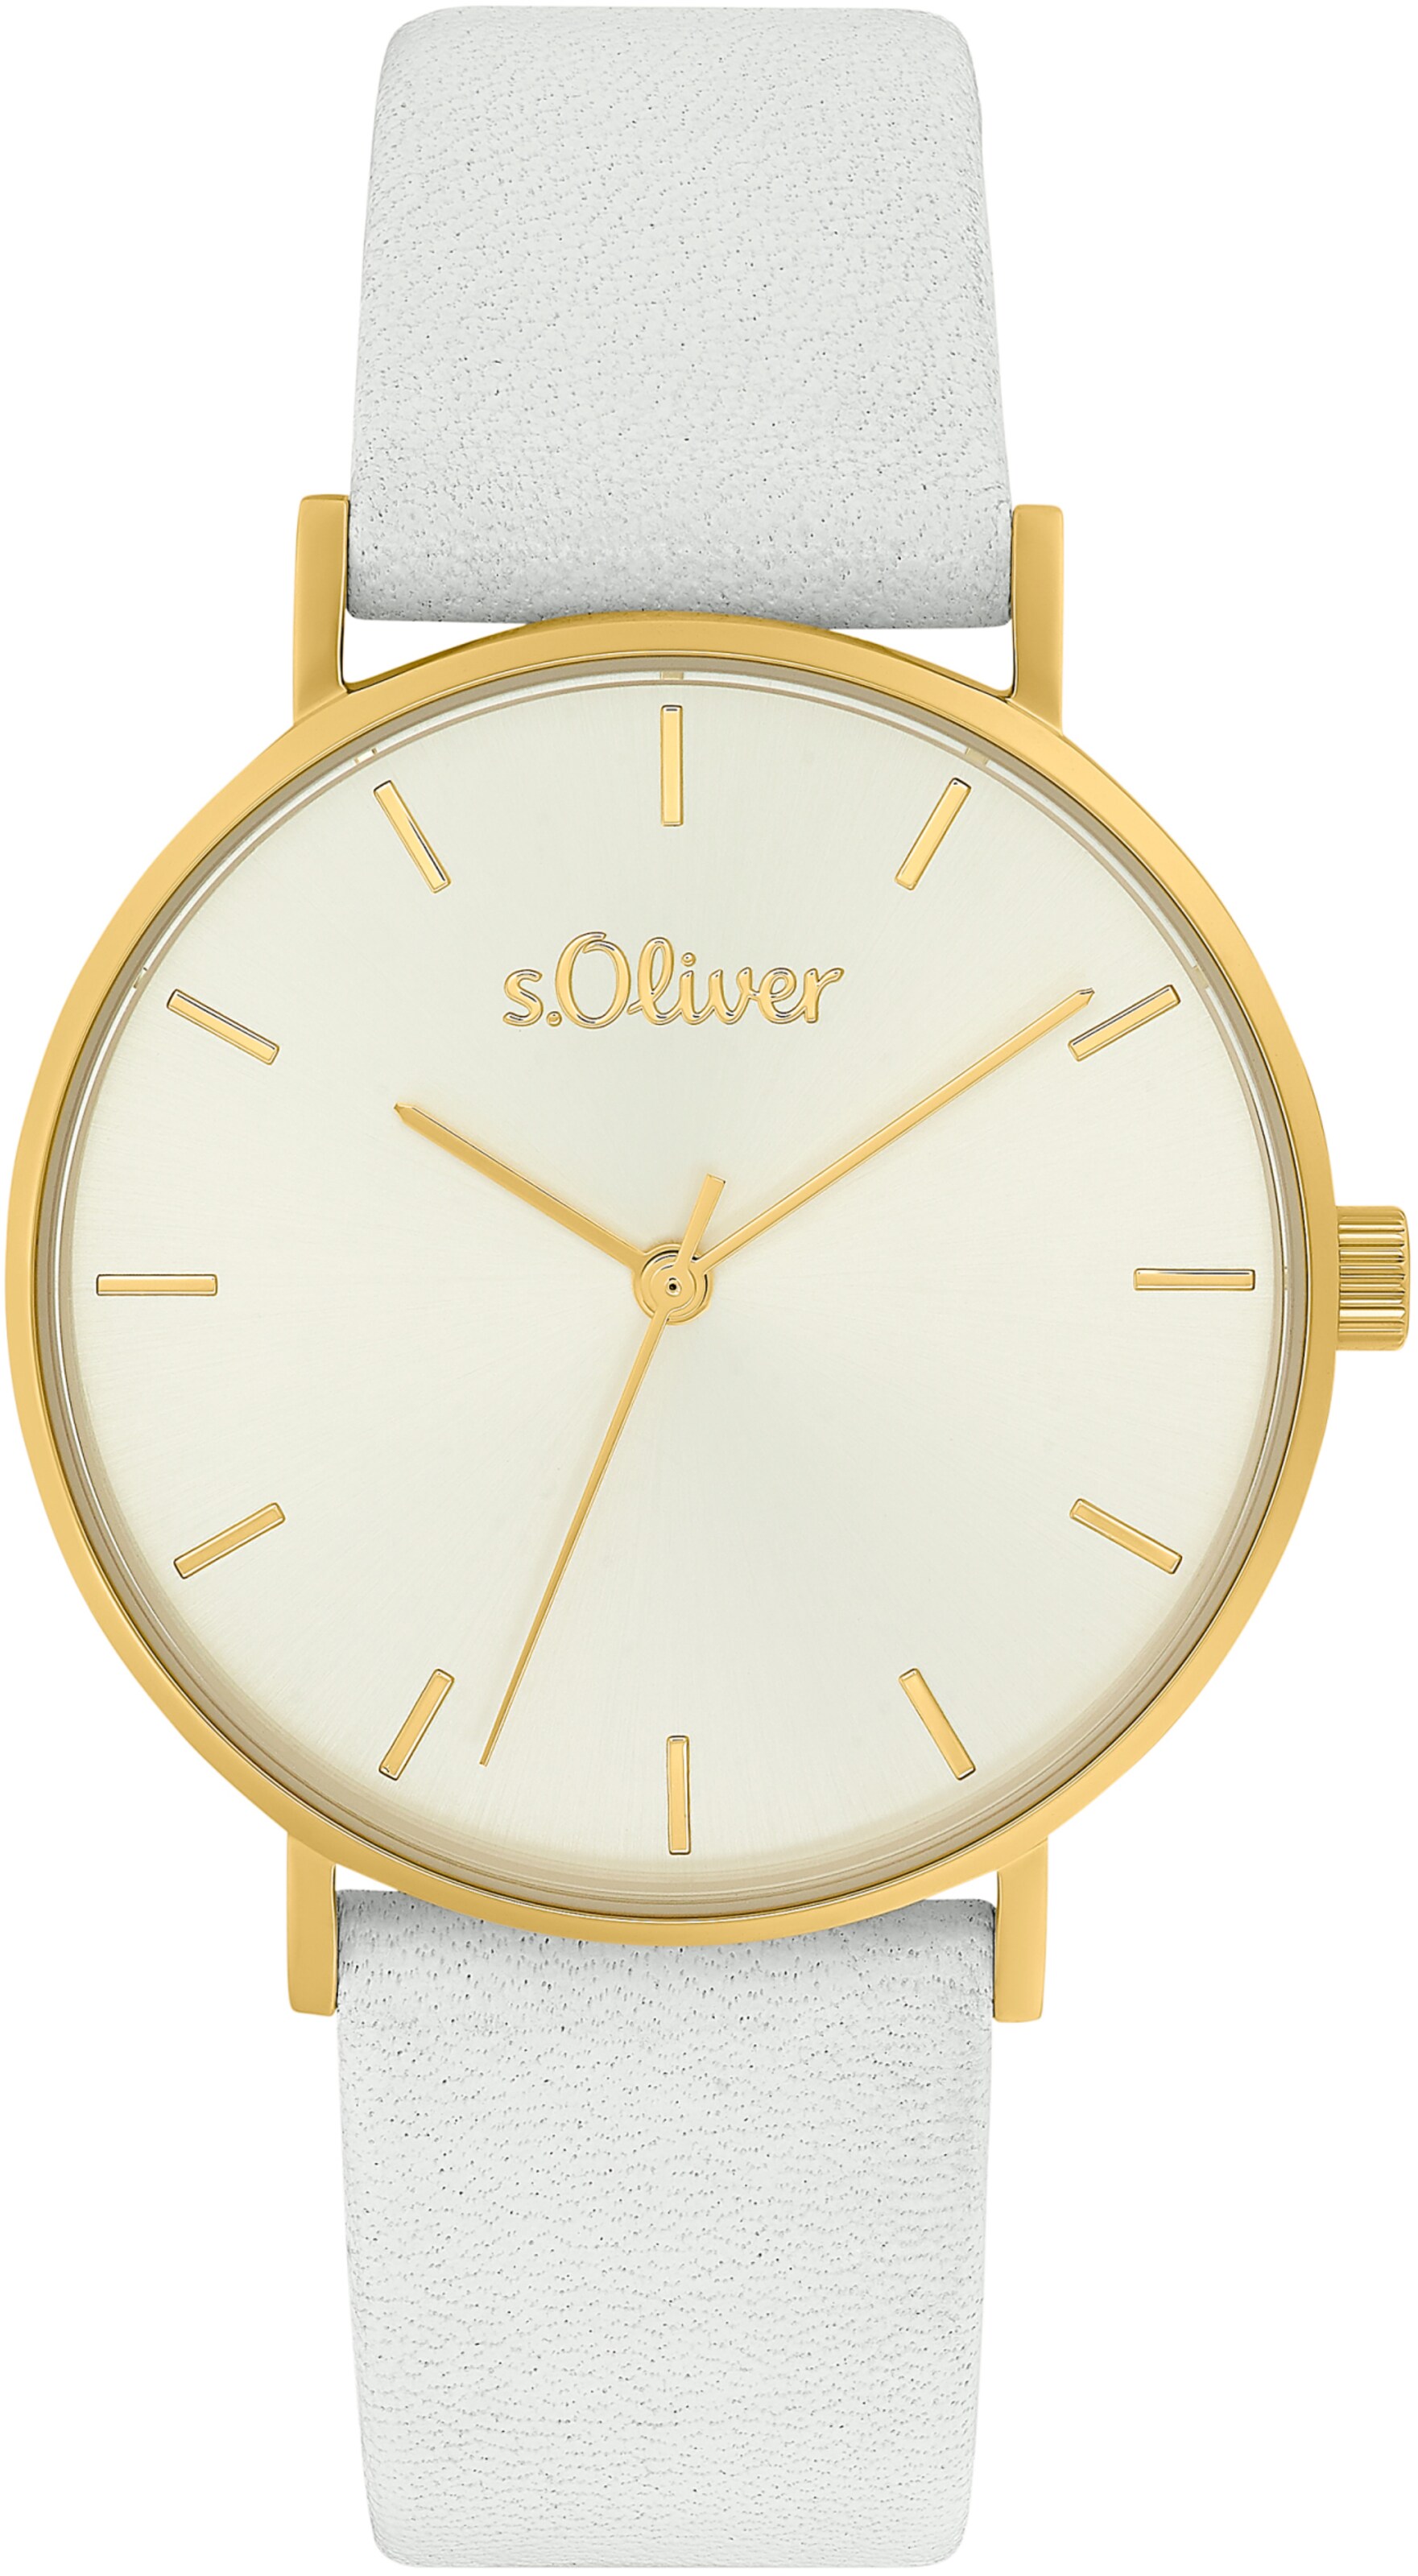 Frauen Uhren s.Oliver Uhr in Weiß - RO34421